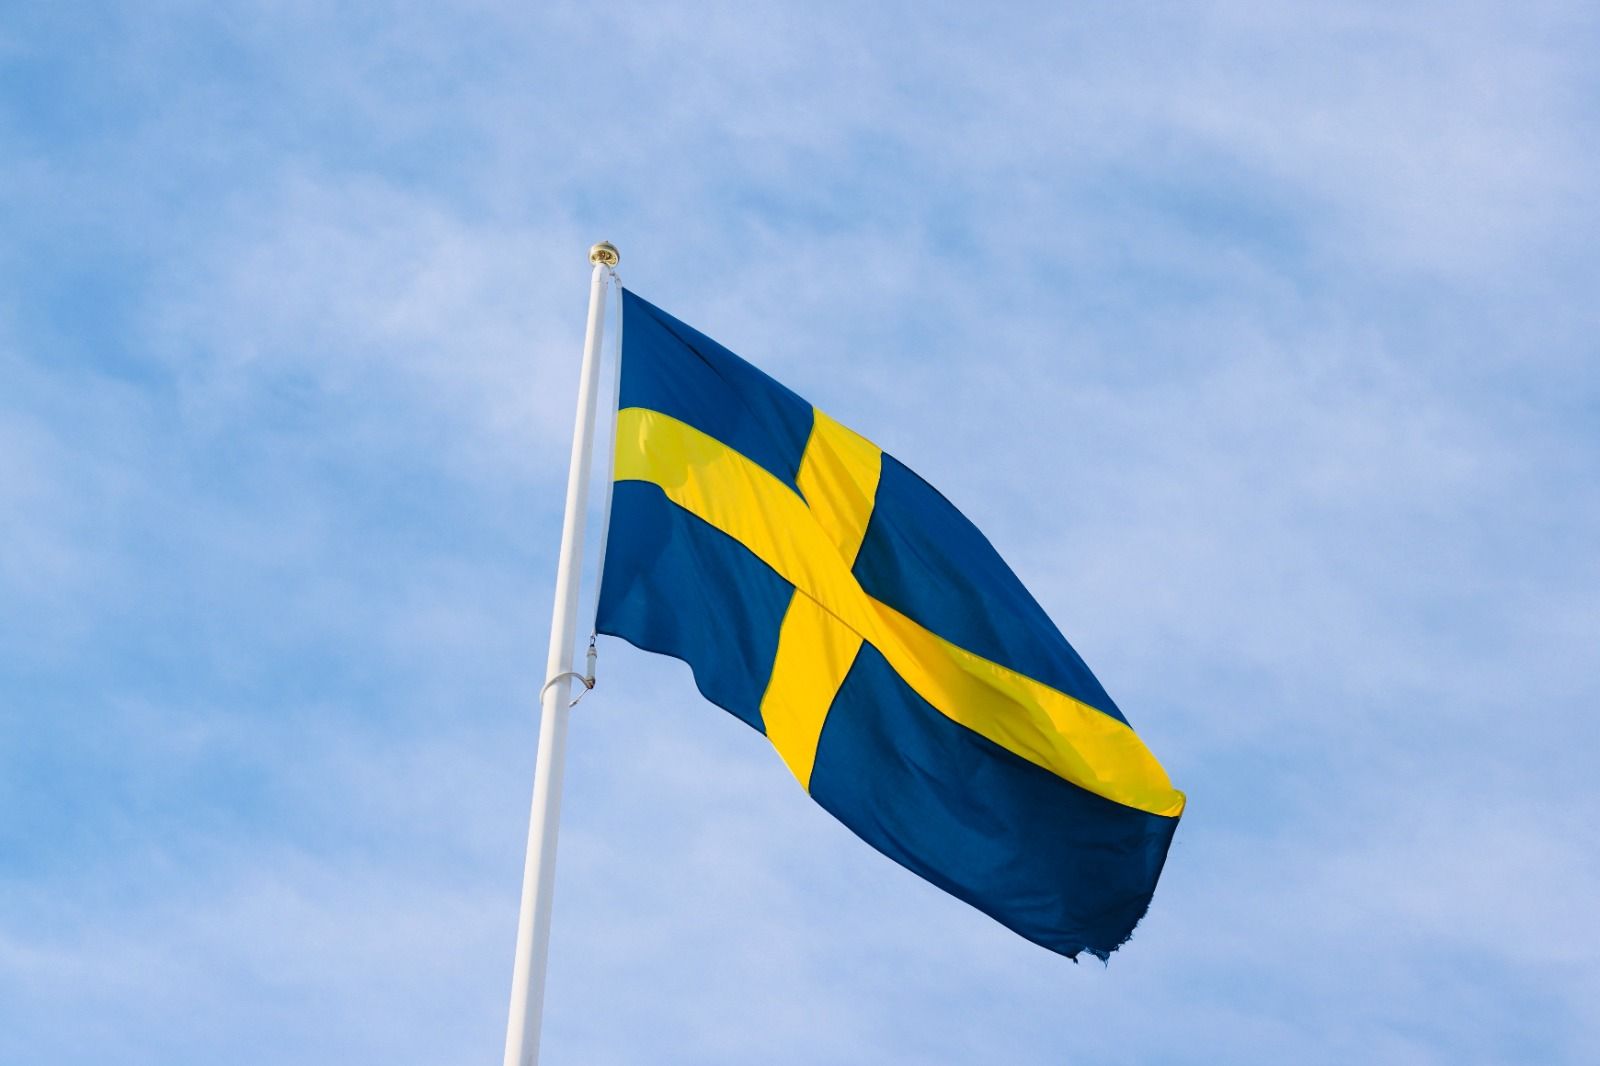 Lebih Rendah Risiko, Swedia Maksimalkan Produk Tembakau Alternatif untuk Turunkan Prevalensi Merokok